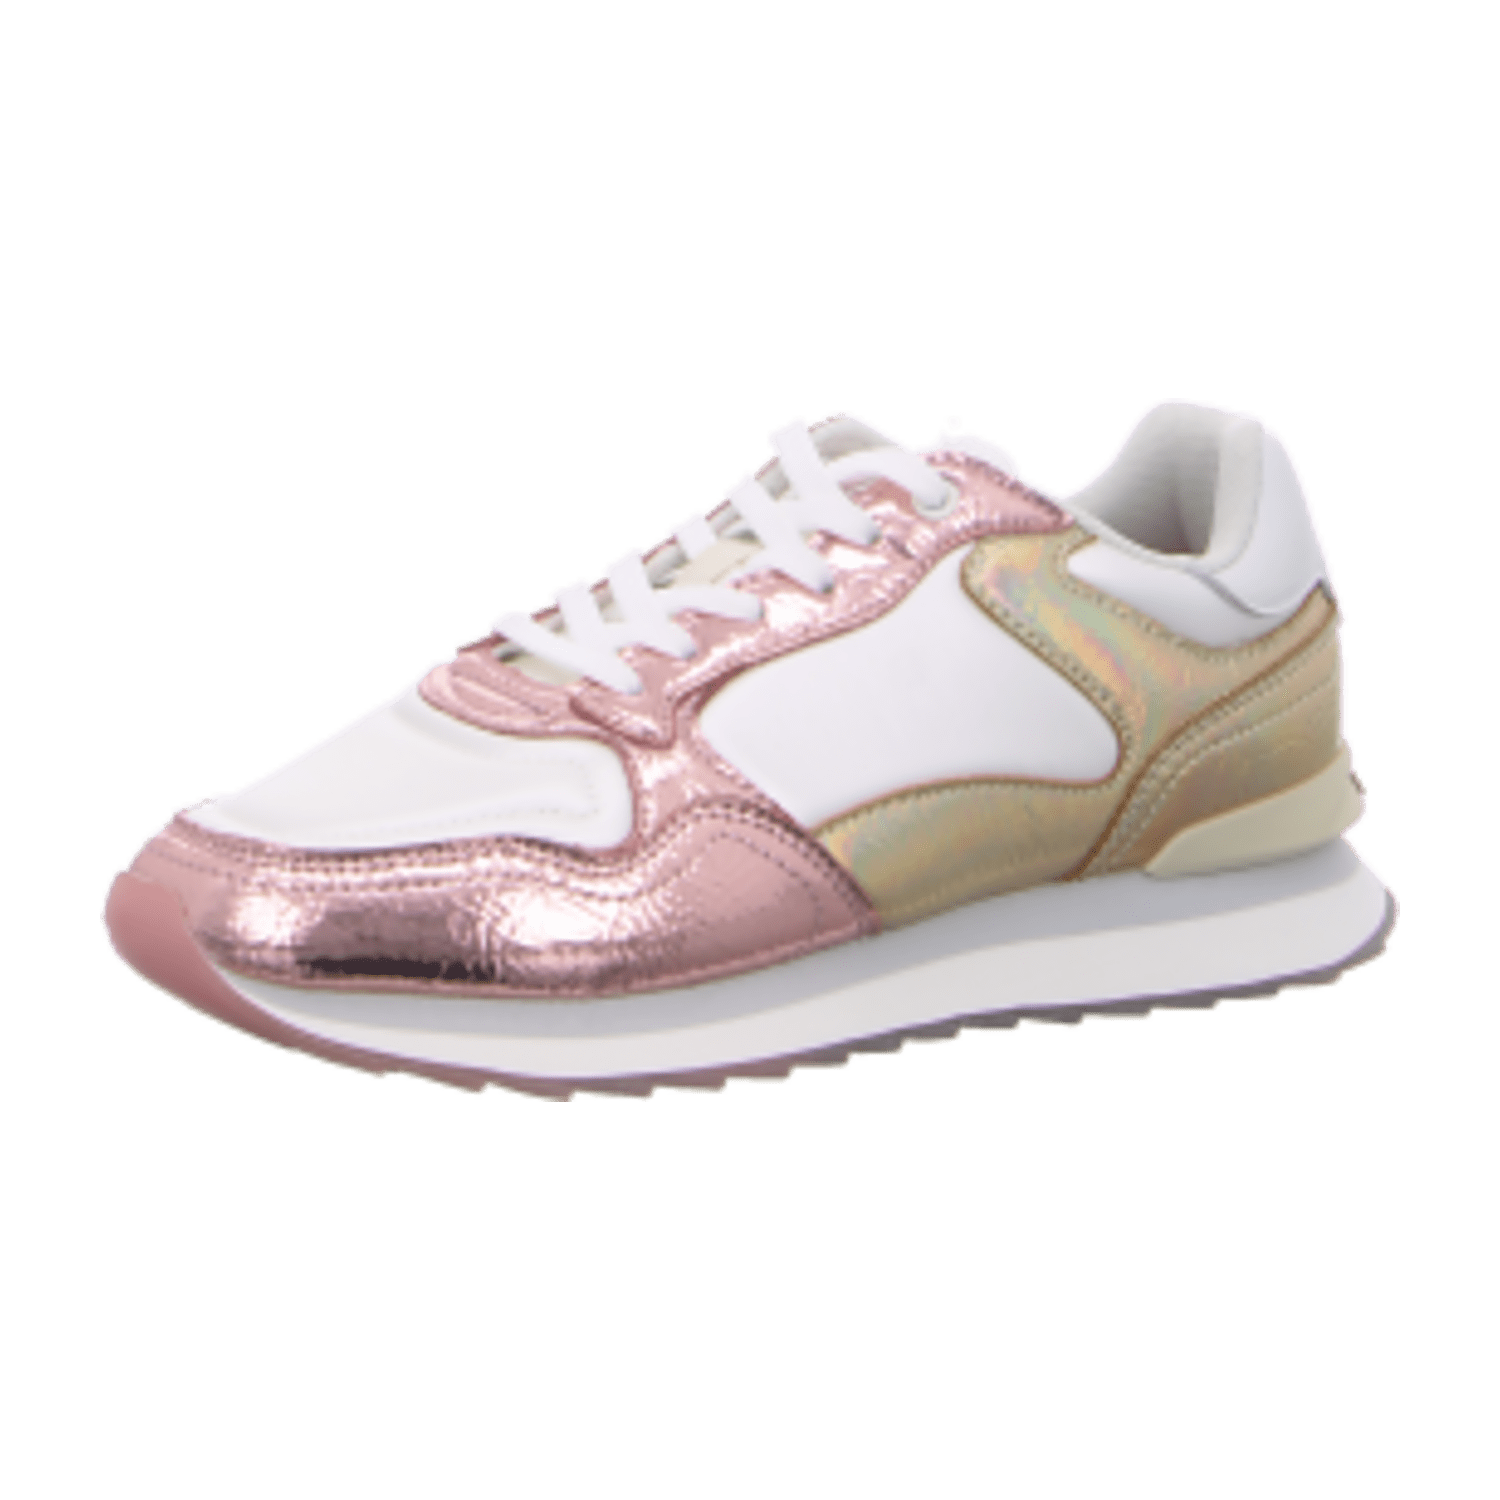 Hoff COOPER Schuhe Sneakers rosa gold metallic 12402018